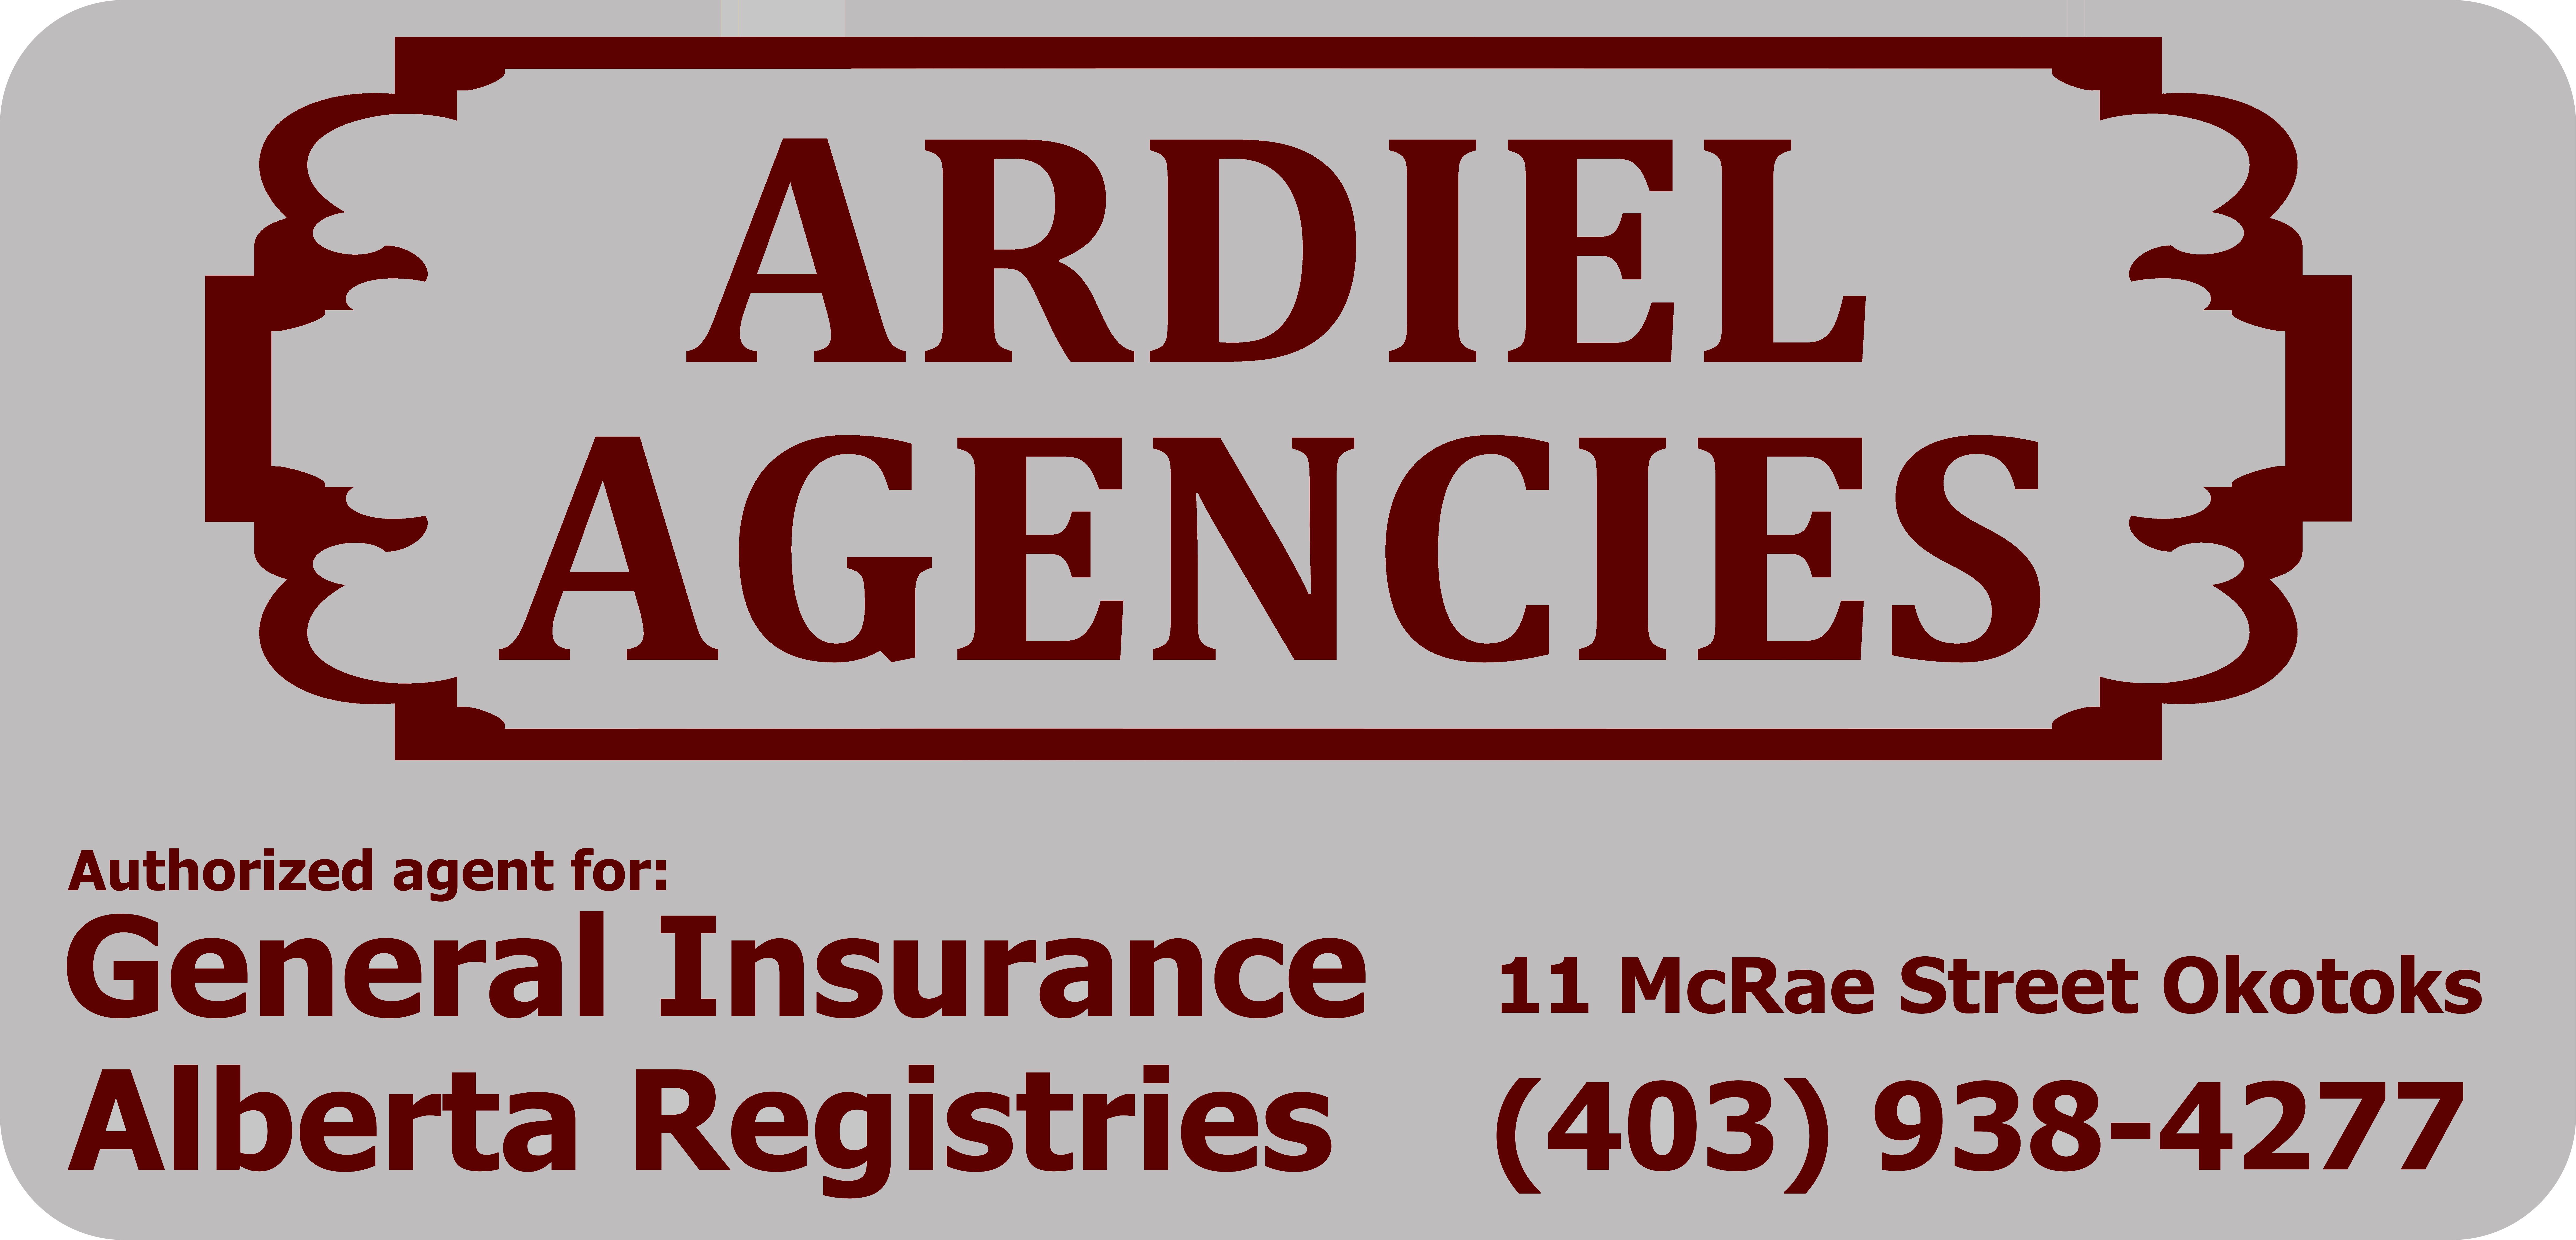 Ardiel Agencies